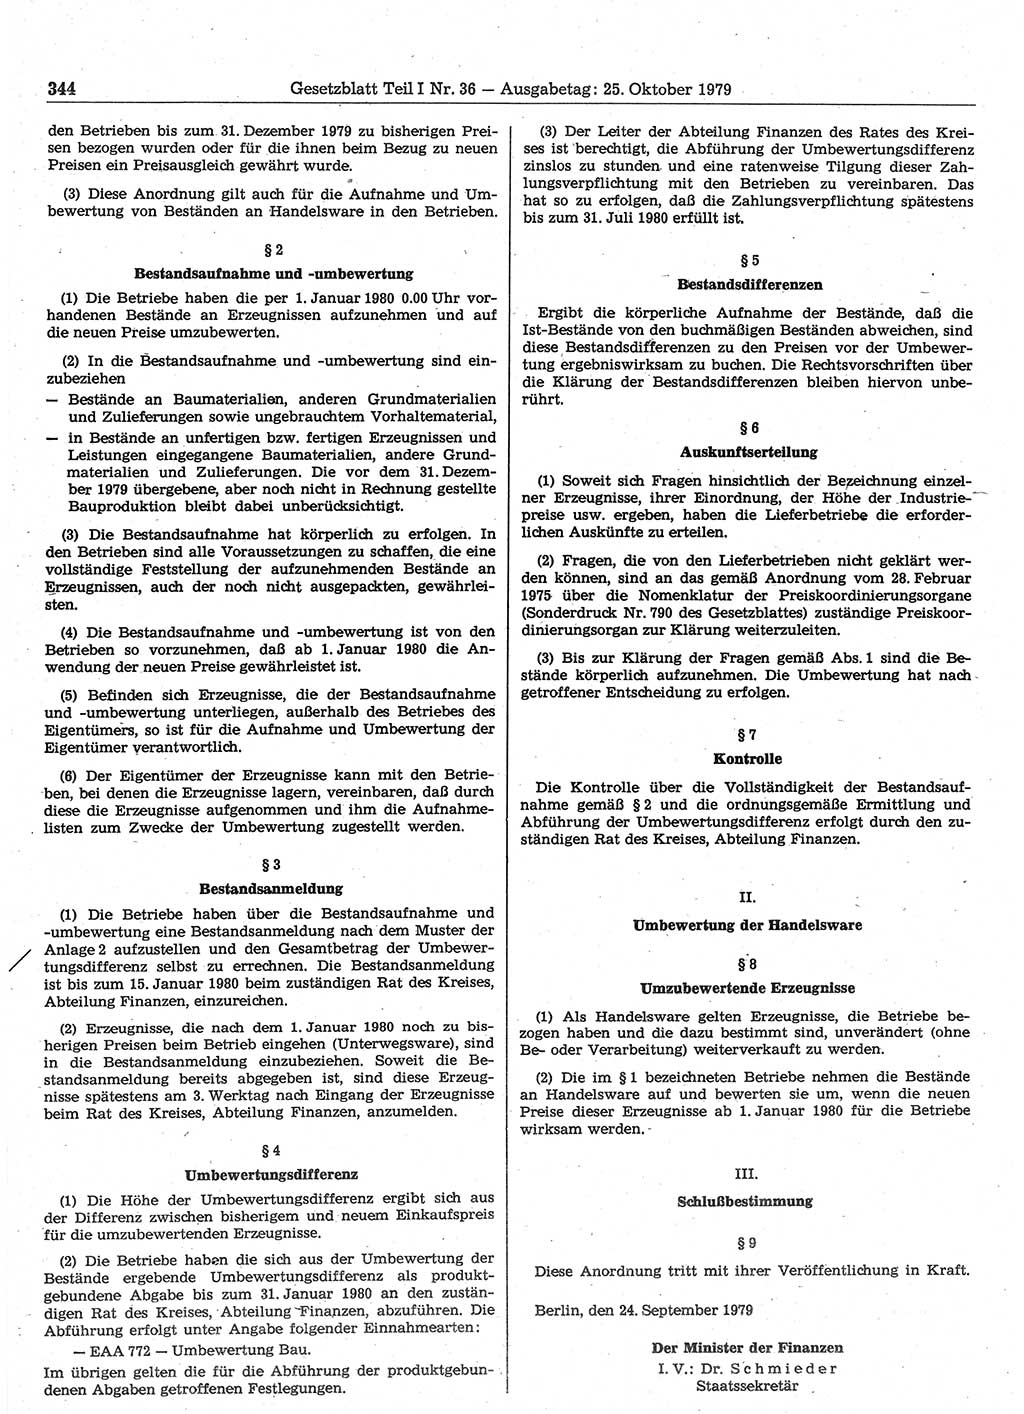 Gesetzblatt (GBl.) der Deutschen Demokratischen Republik (DDR) Teil Ⅰ 1979, Seite 344 (GBl. DDR Ⅰ 1979, S. 344)